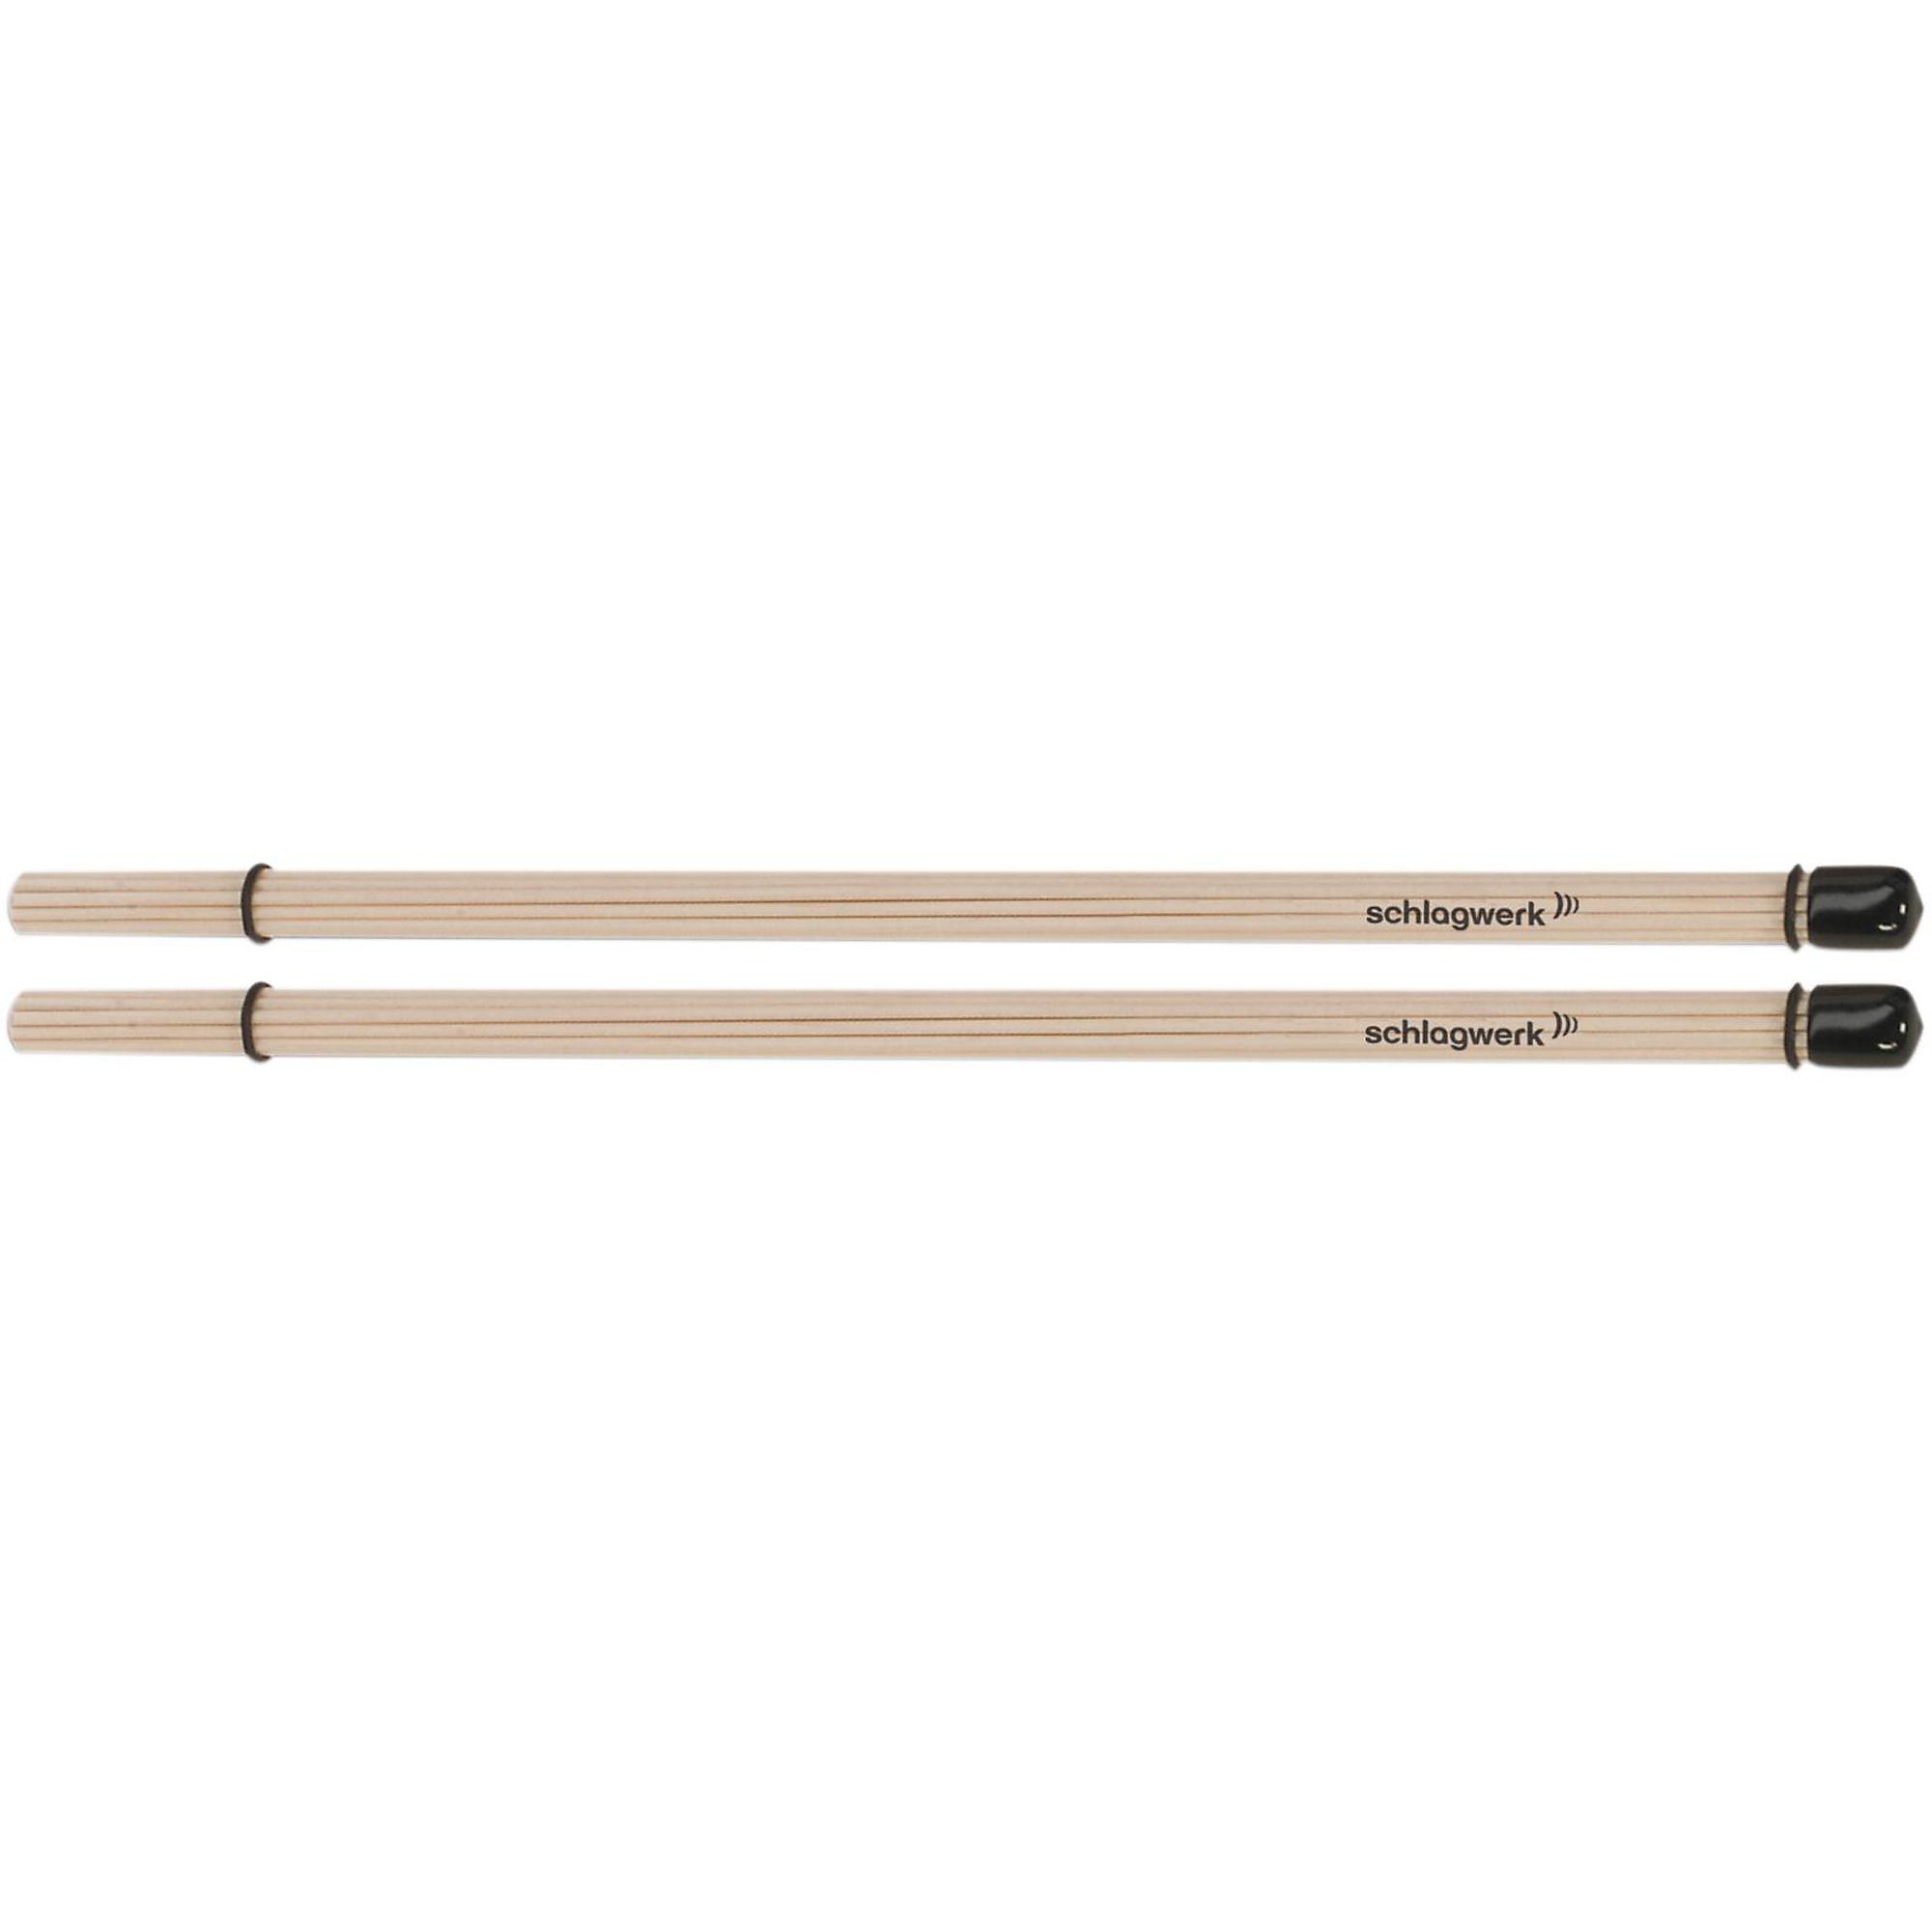 SCHLAGWERK Maple Naked Rods | eBay